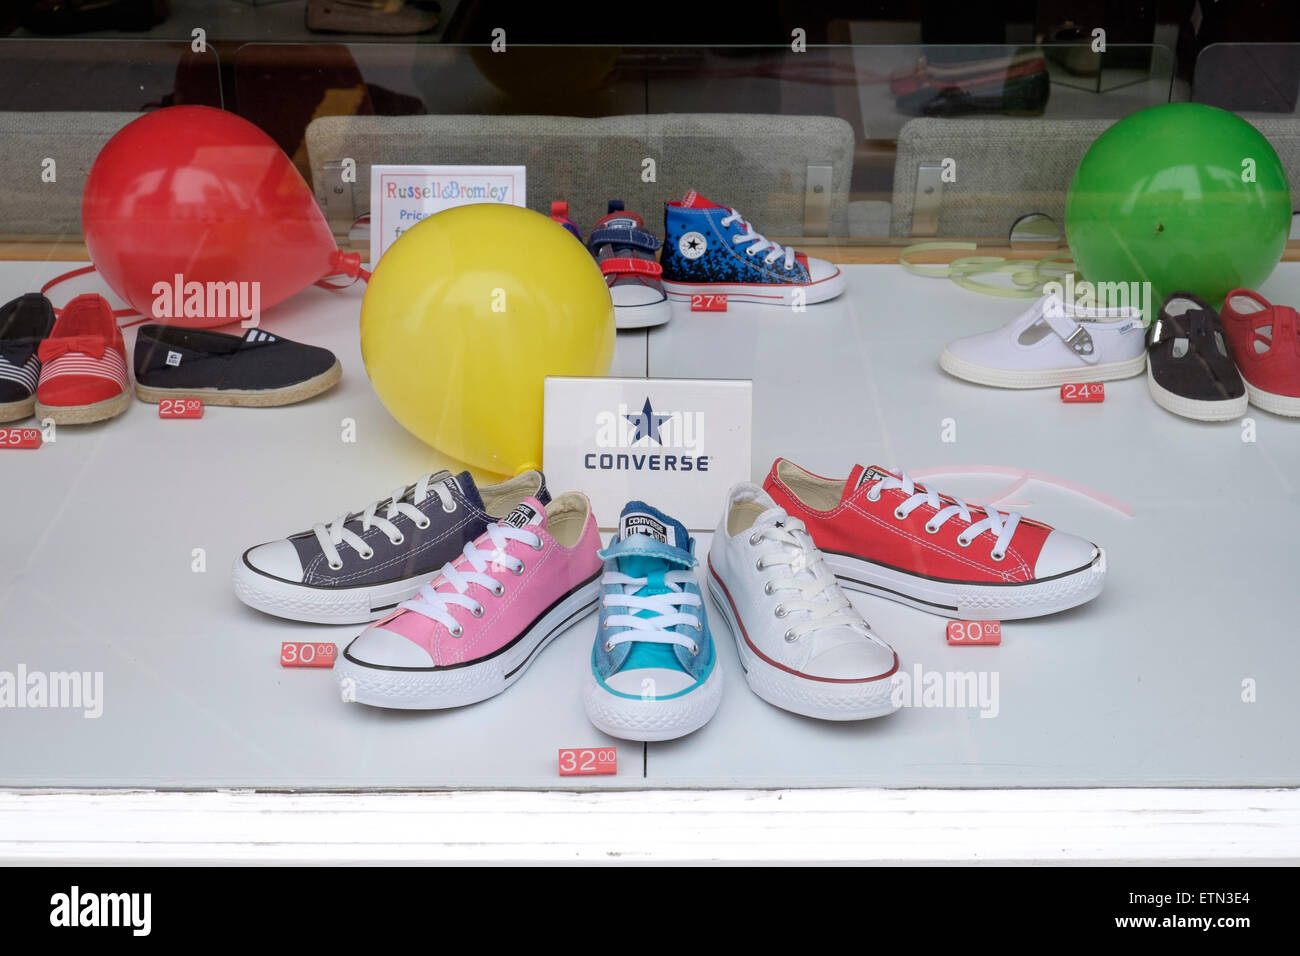 Chaussures Converse enfants affiché dans une fenêtre de magasin de chaussures Banque D'Images